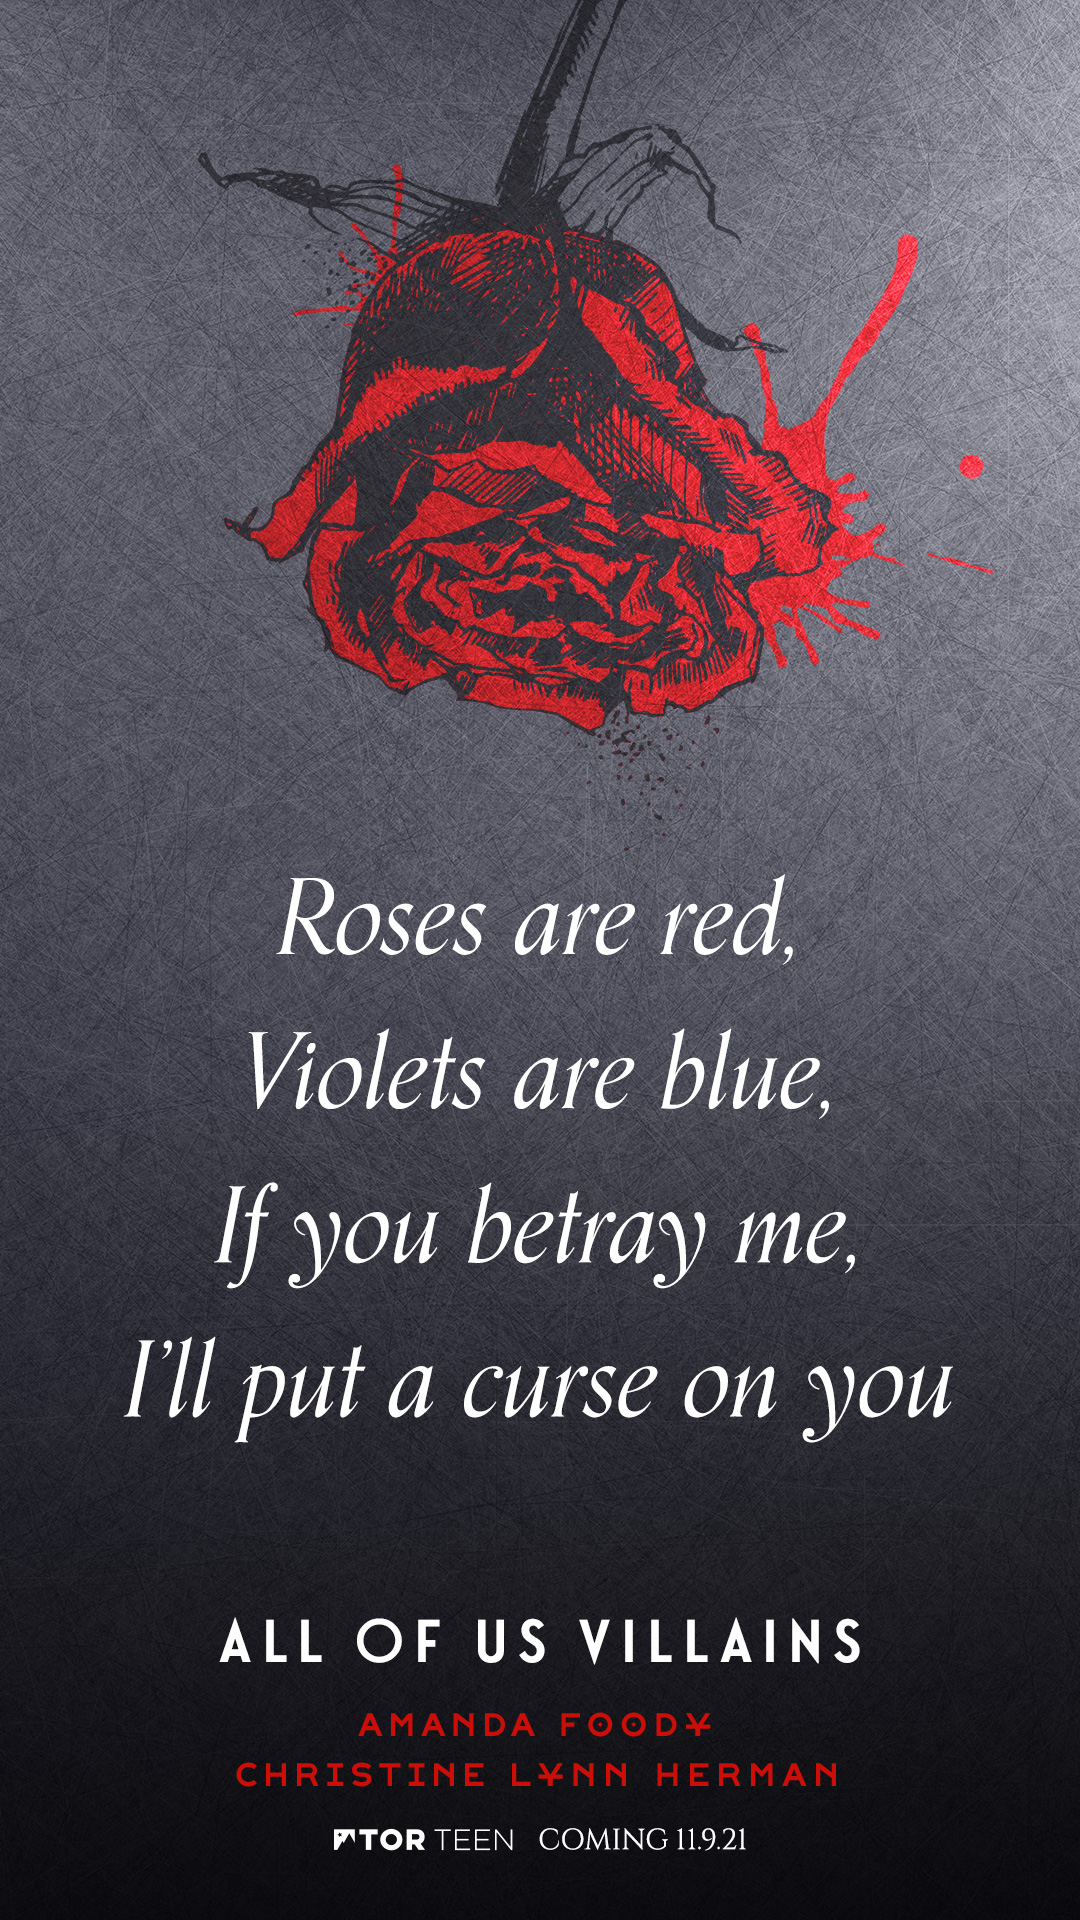 roses r red violets ar blue 